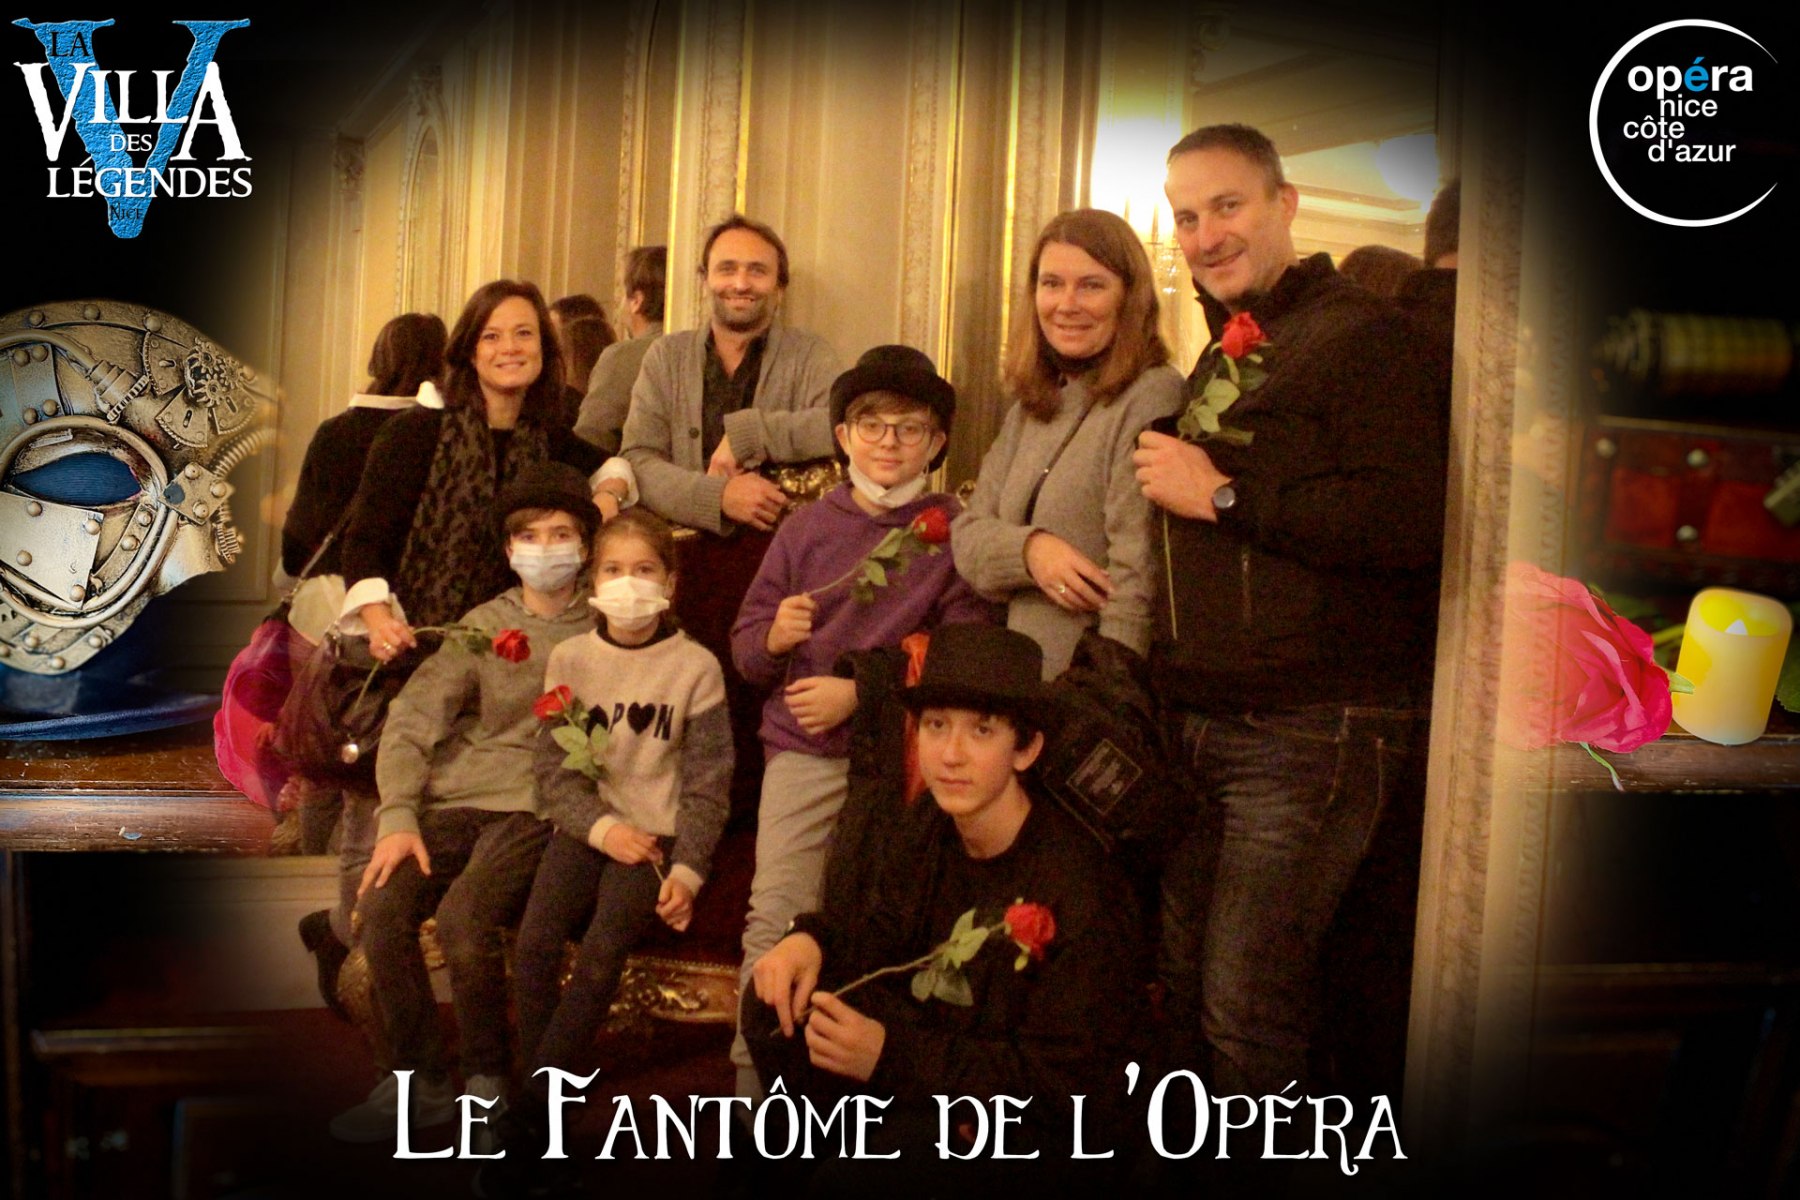 Le_Fantome_de_lOpera-Photos_Joueurs-11_dec_2021-La_Villa_des_Legendes-Opera_de_Nicegroupe_11